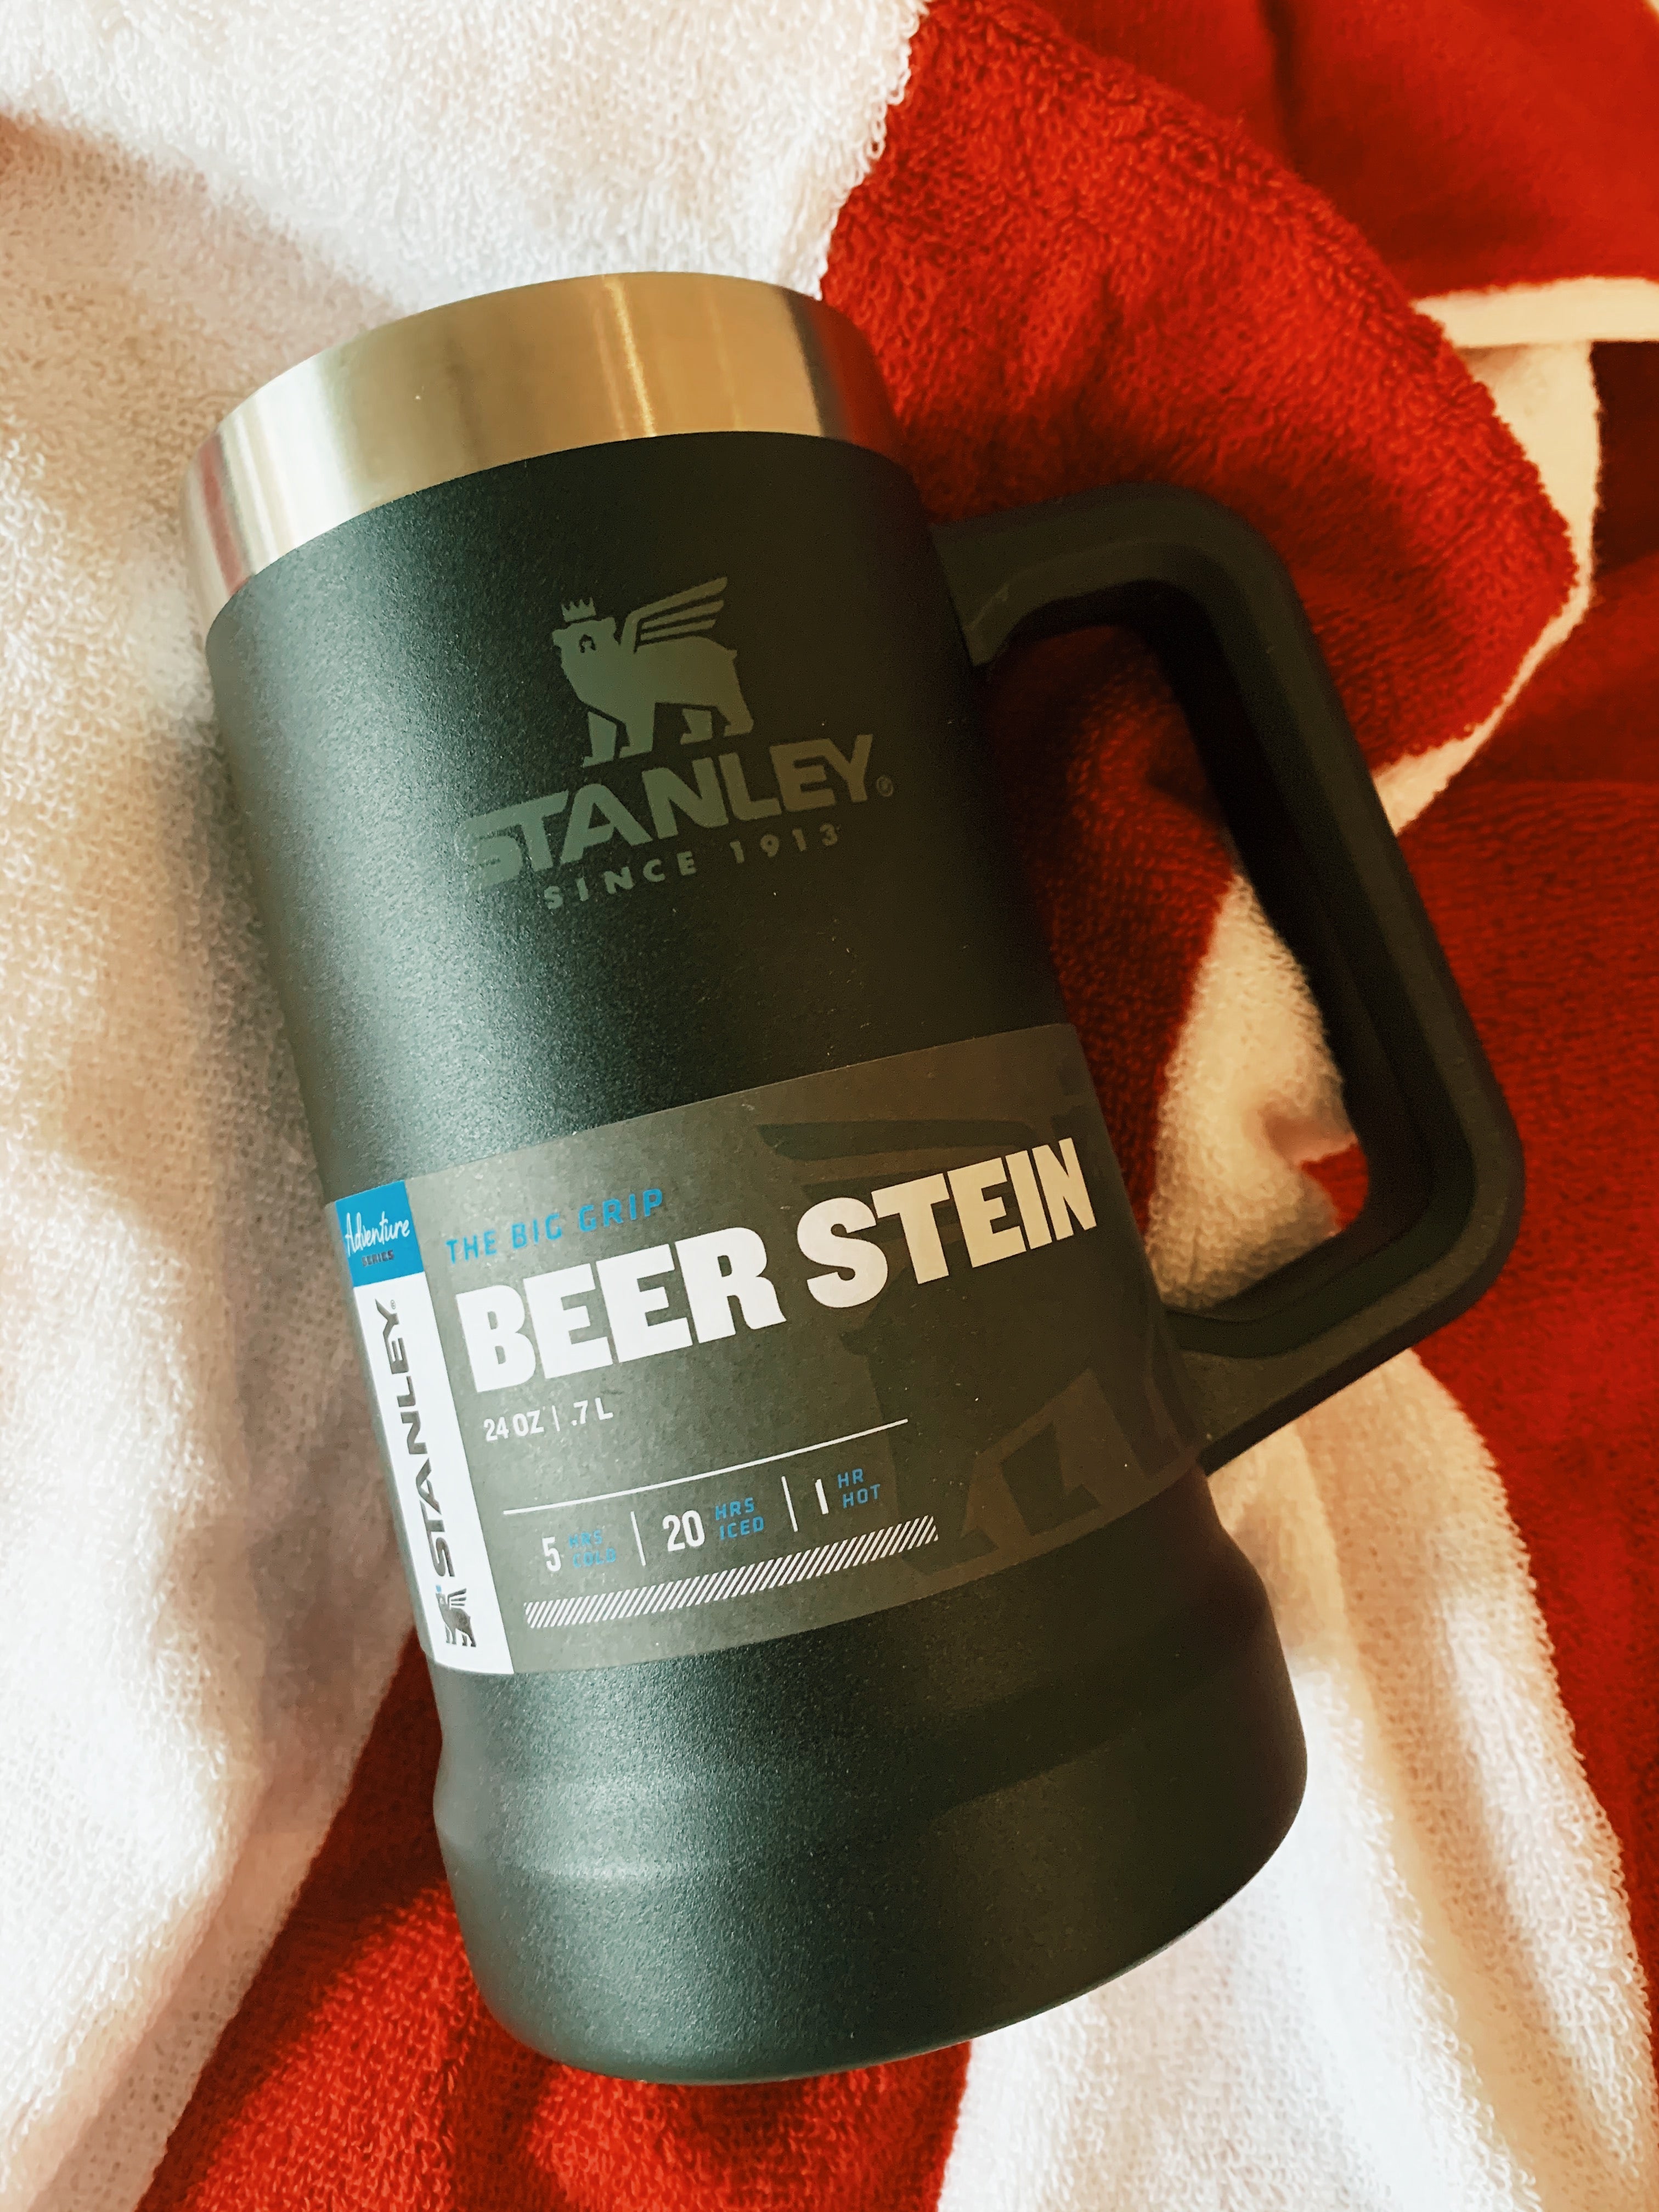 Big Beer Pint Stein Stanley